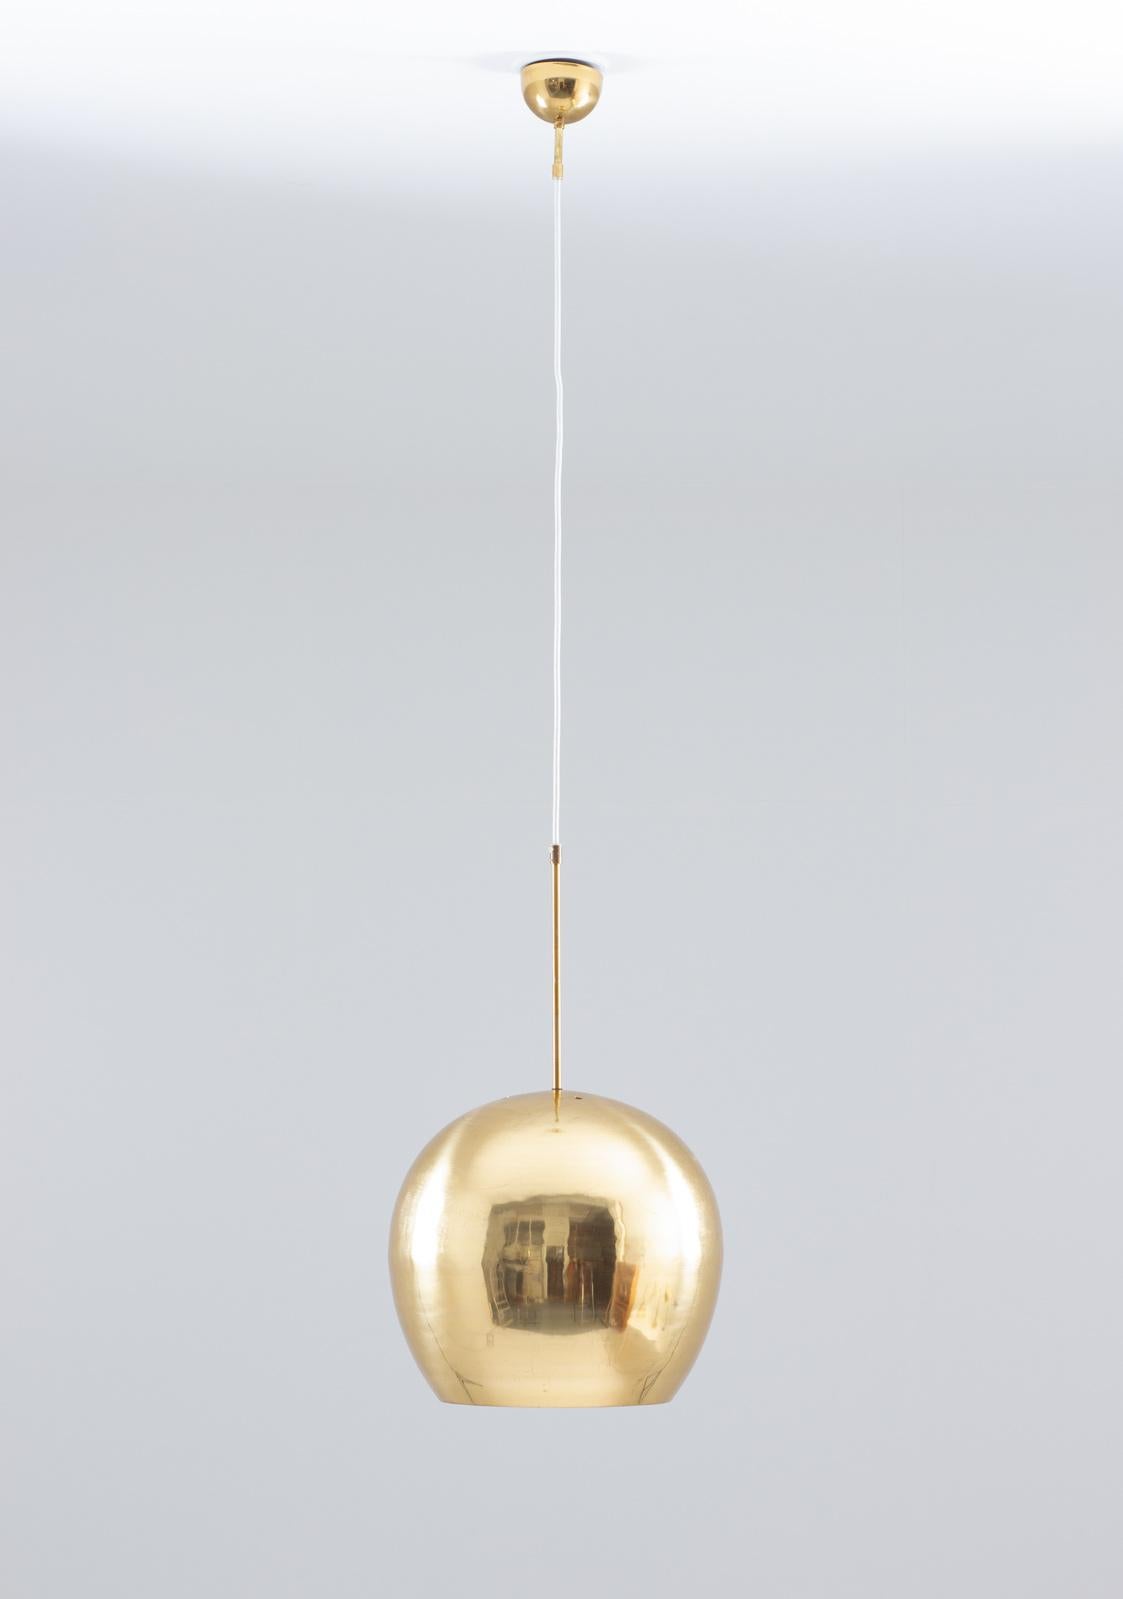 Grand pendentif en laiton, probablement produit en Suède dans les années 1960.
Cette lampe comporte une source de lumière, entourée d'un grand abat-jour en laiton de forme ovoïde.
Condition : Très bon état avec de légères éraflures dues à l'âge et